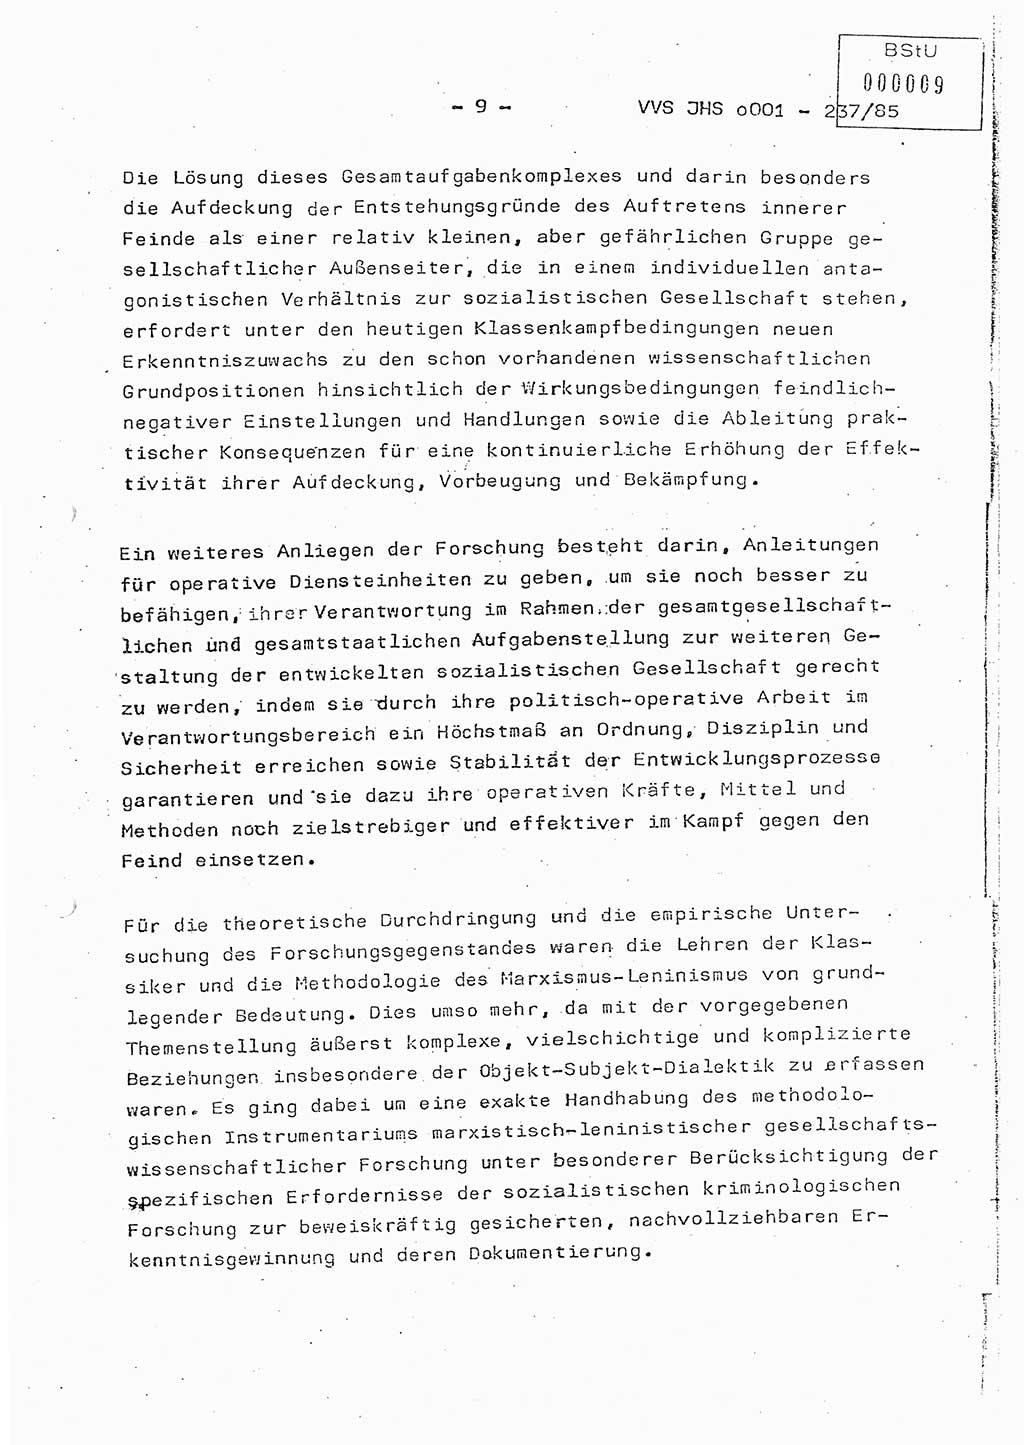 Dissertation Oberstleutnant Peter Jakulski (JHS), Oberstleutnat Christian Rudolph (HA Ⅸ), Major Horst Böttger (ZMD), Major Wolfgang Grüneberg (JHS), Major Albert Meutsch (JHS), Ministerium für Staatssicherheit (MfS) [Deutsche Demokratische Republik (DDR)], Juristische Hochschule (JHS), Vertrauliche Verschlußsache (VVS) o001-237/85, Potsdam 1985, Seite 9 (Diss. MfS DDR JHS VVS o001-237/85 1985, S. 9)